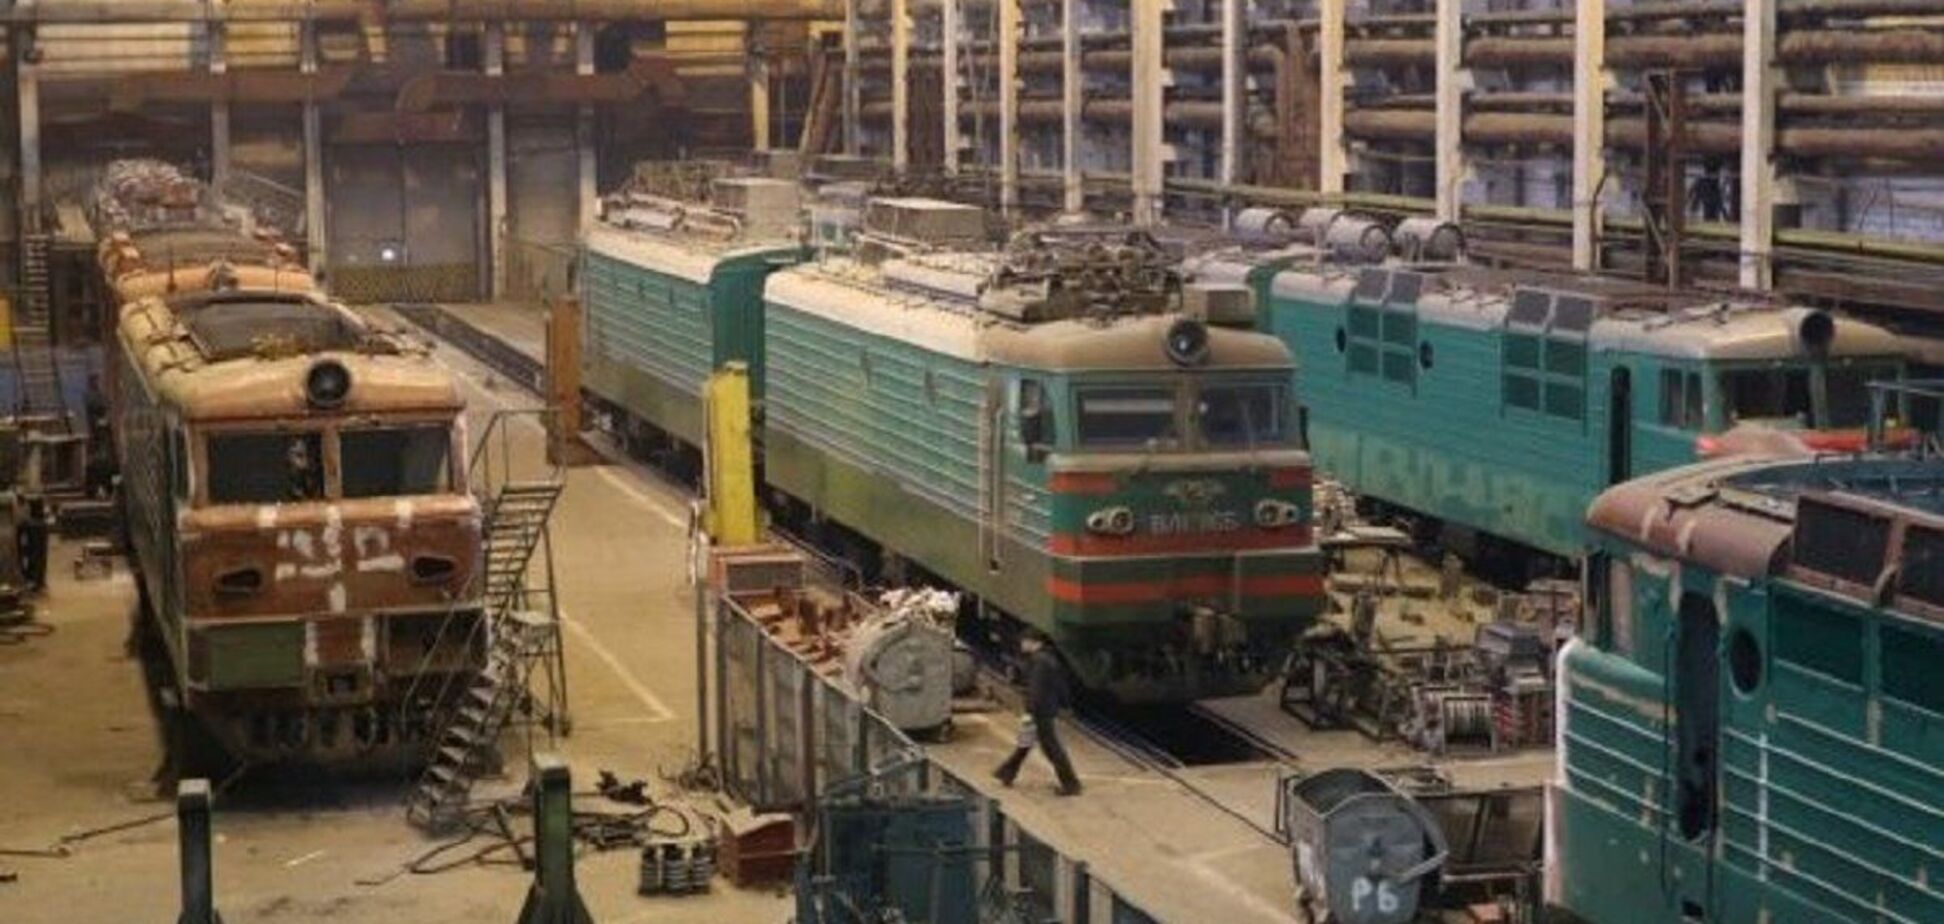 Львовский локомотиворемонтный завод получит крупный заказ в 2021 году, — Скичко